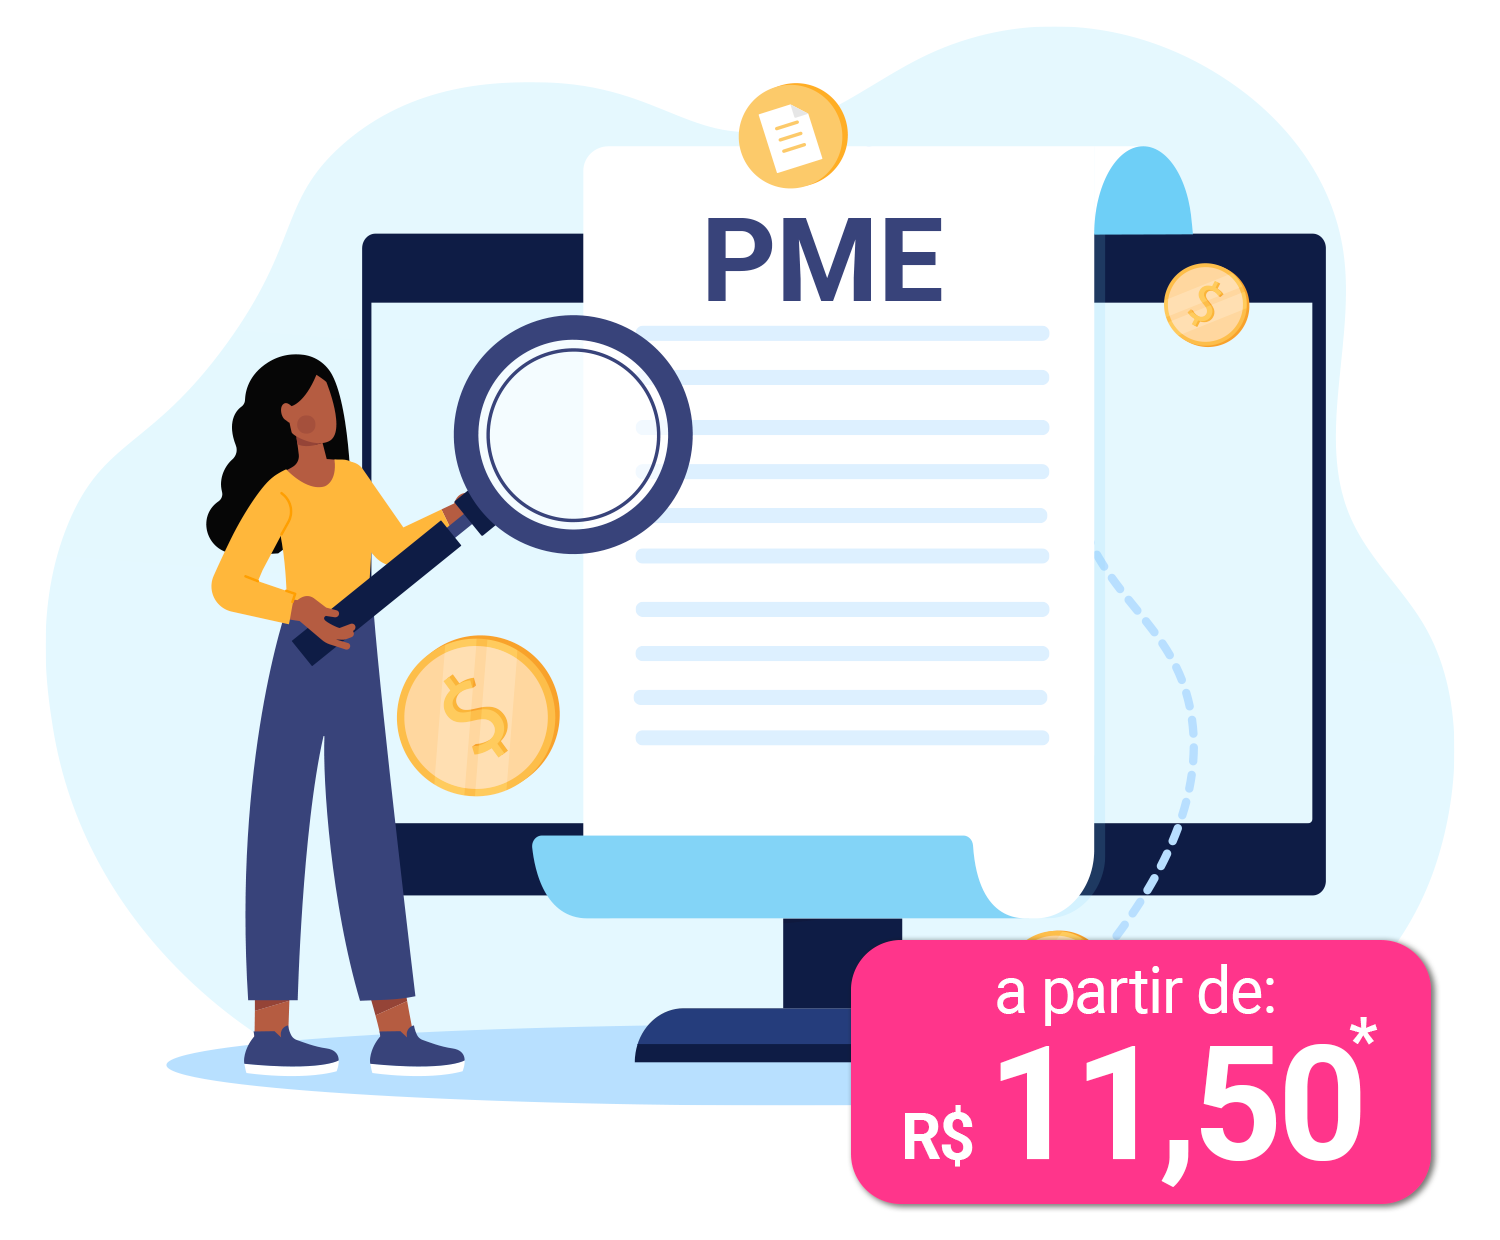 Imagem de fórmula matemática com ilustração de uma mulher segurando uma lupa grande em cima de um documento com a sigla PME. No rodapé da somatória uma caixa indicando o valor "a partir de R$ 11,50"